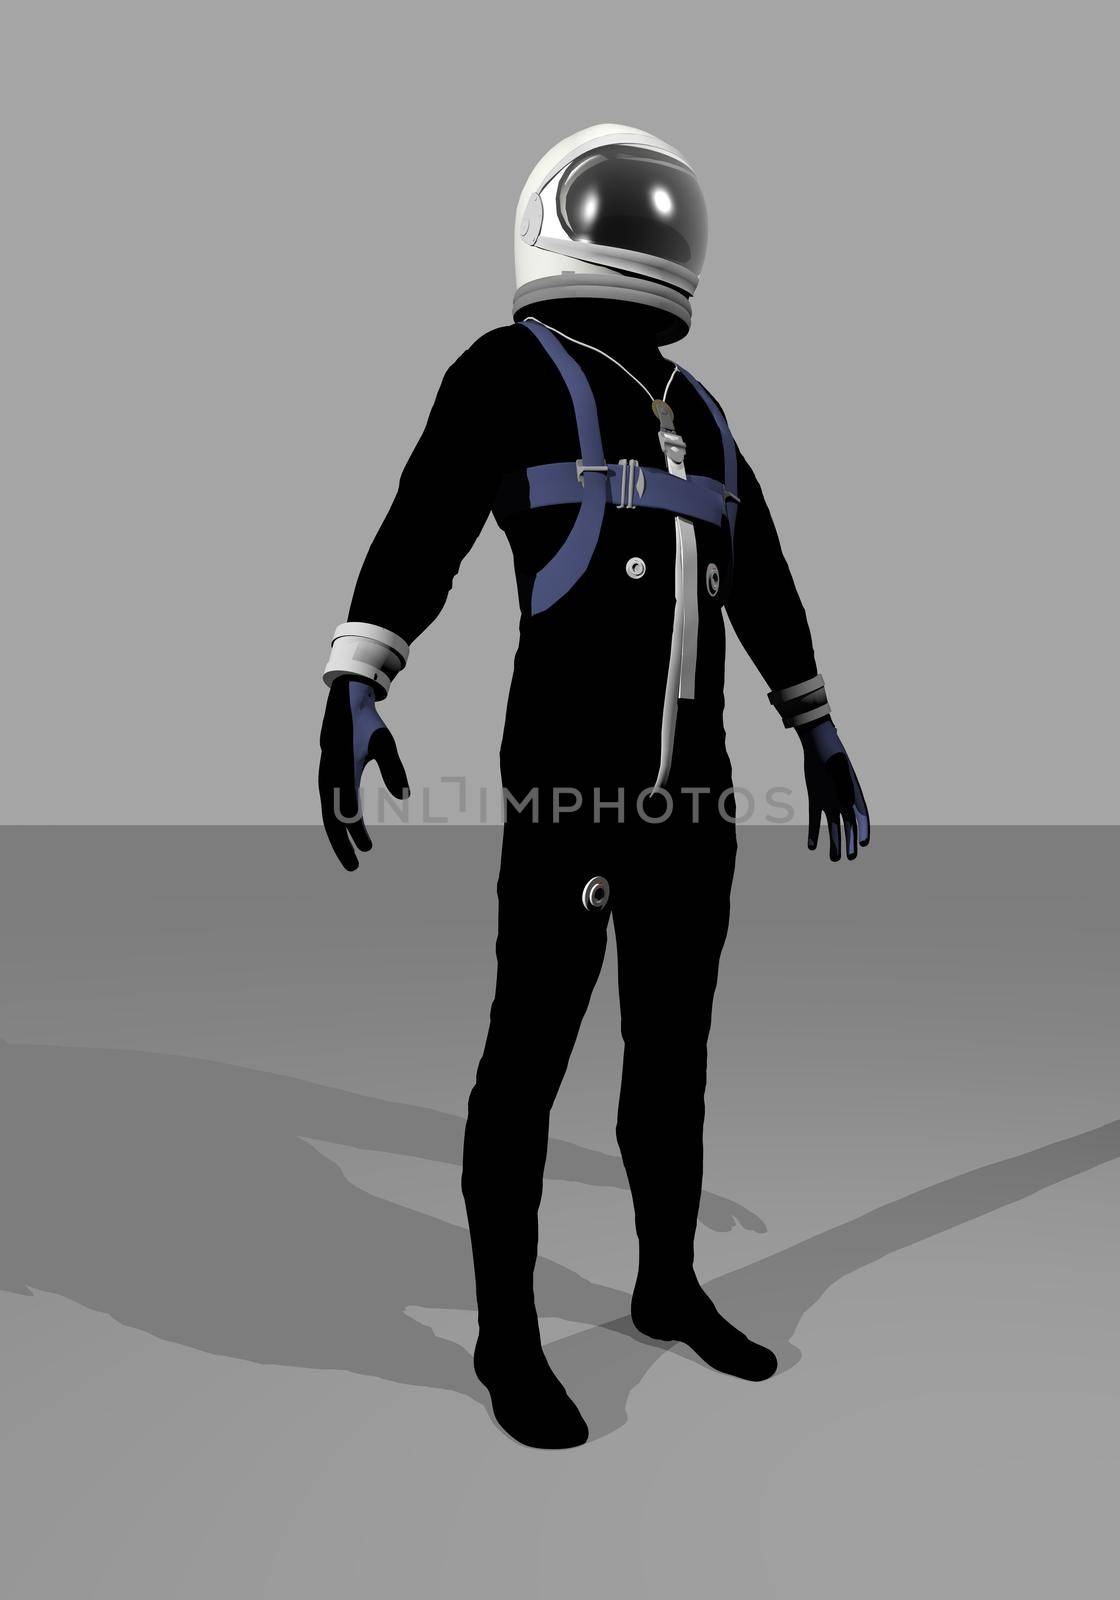 Mercury space suit - 3D render by Elenaphotos21